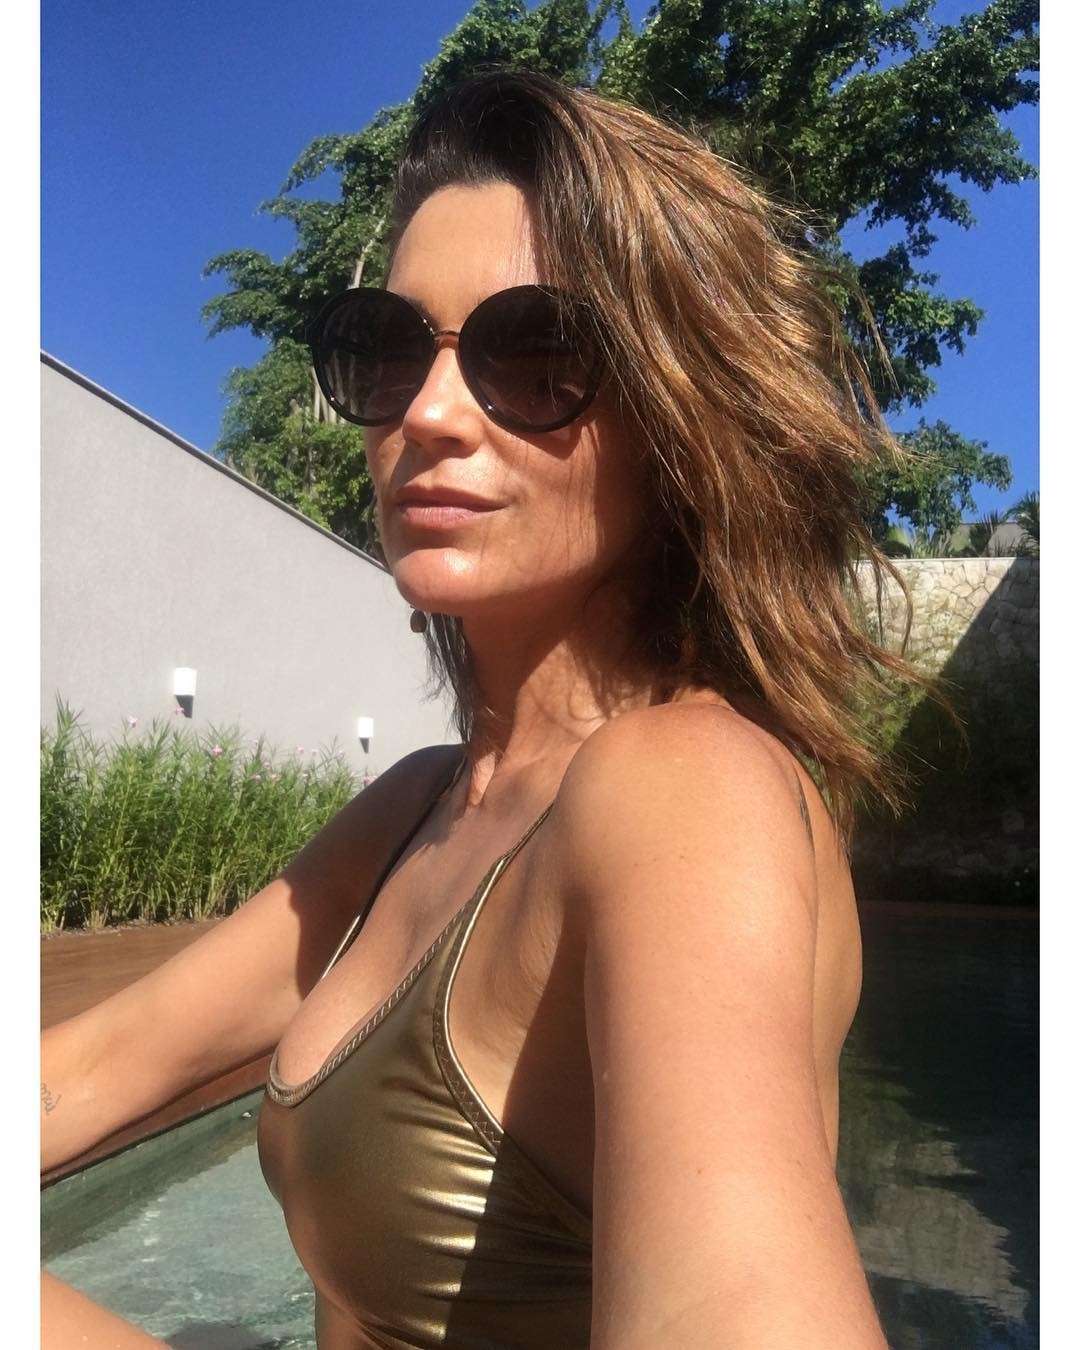 Flavia Alessandra no Instagram (Foto: Reprodução/Instagram)